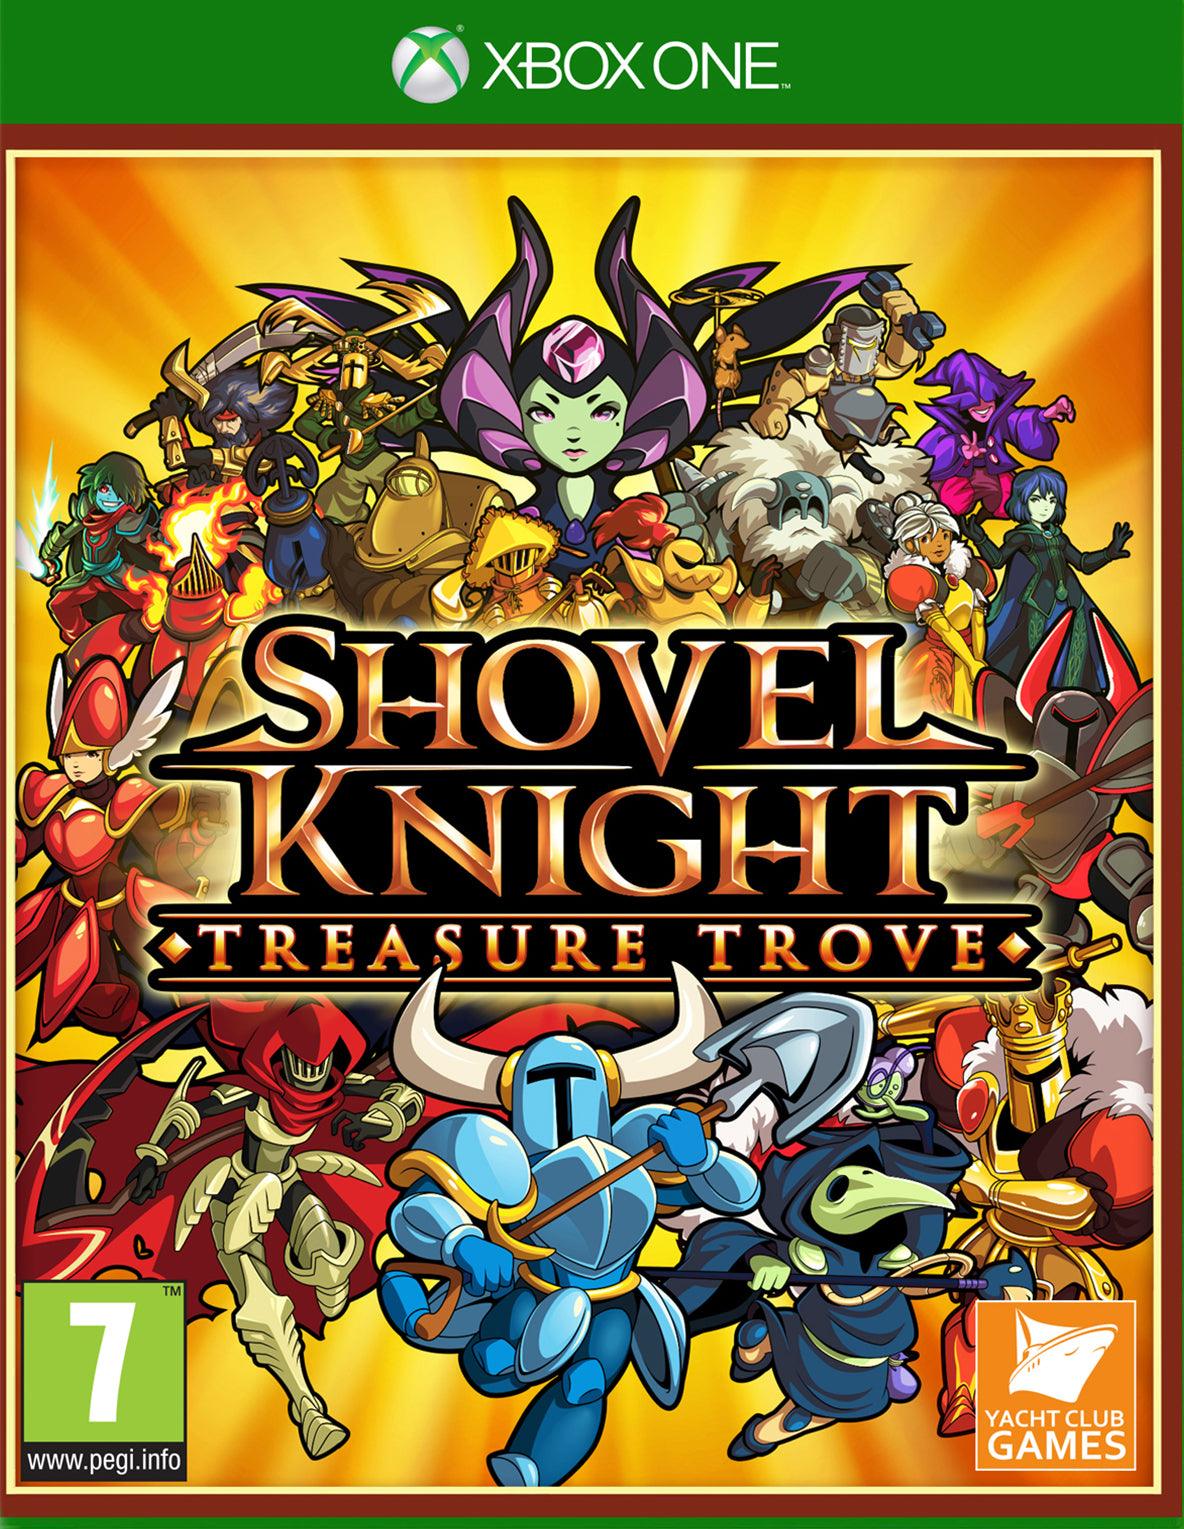 Shovel Knight Treasure Trove - Want a New Gadget